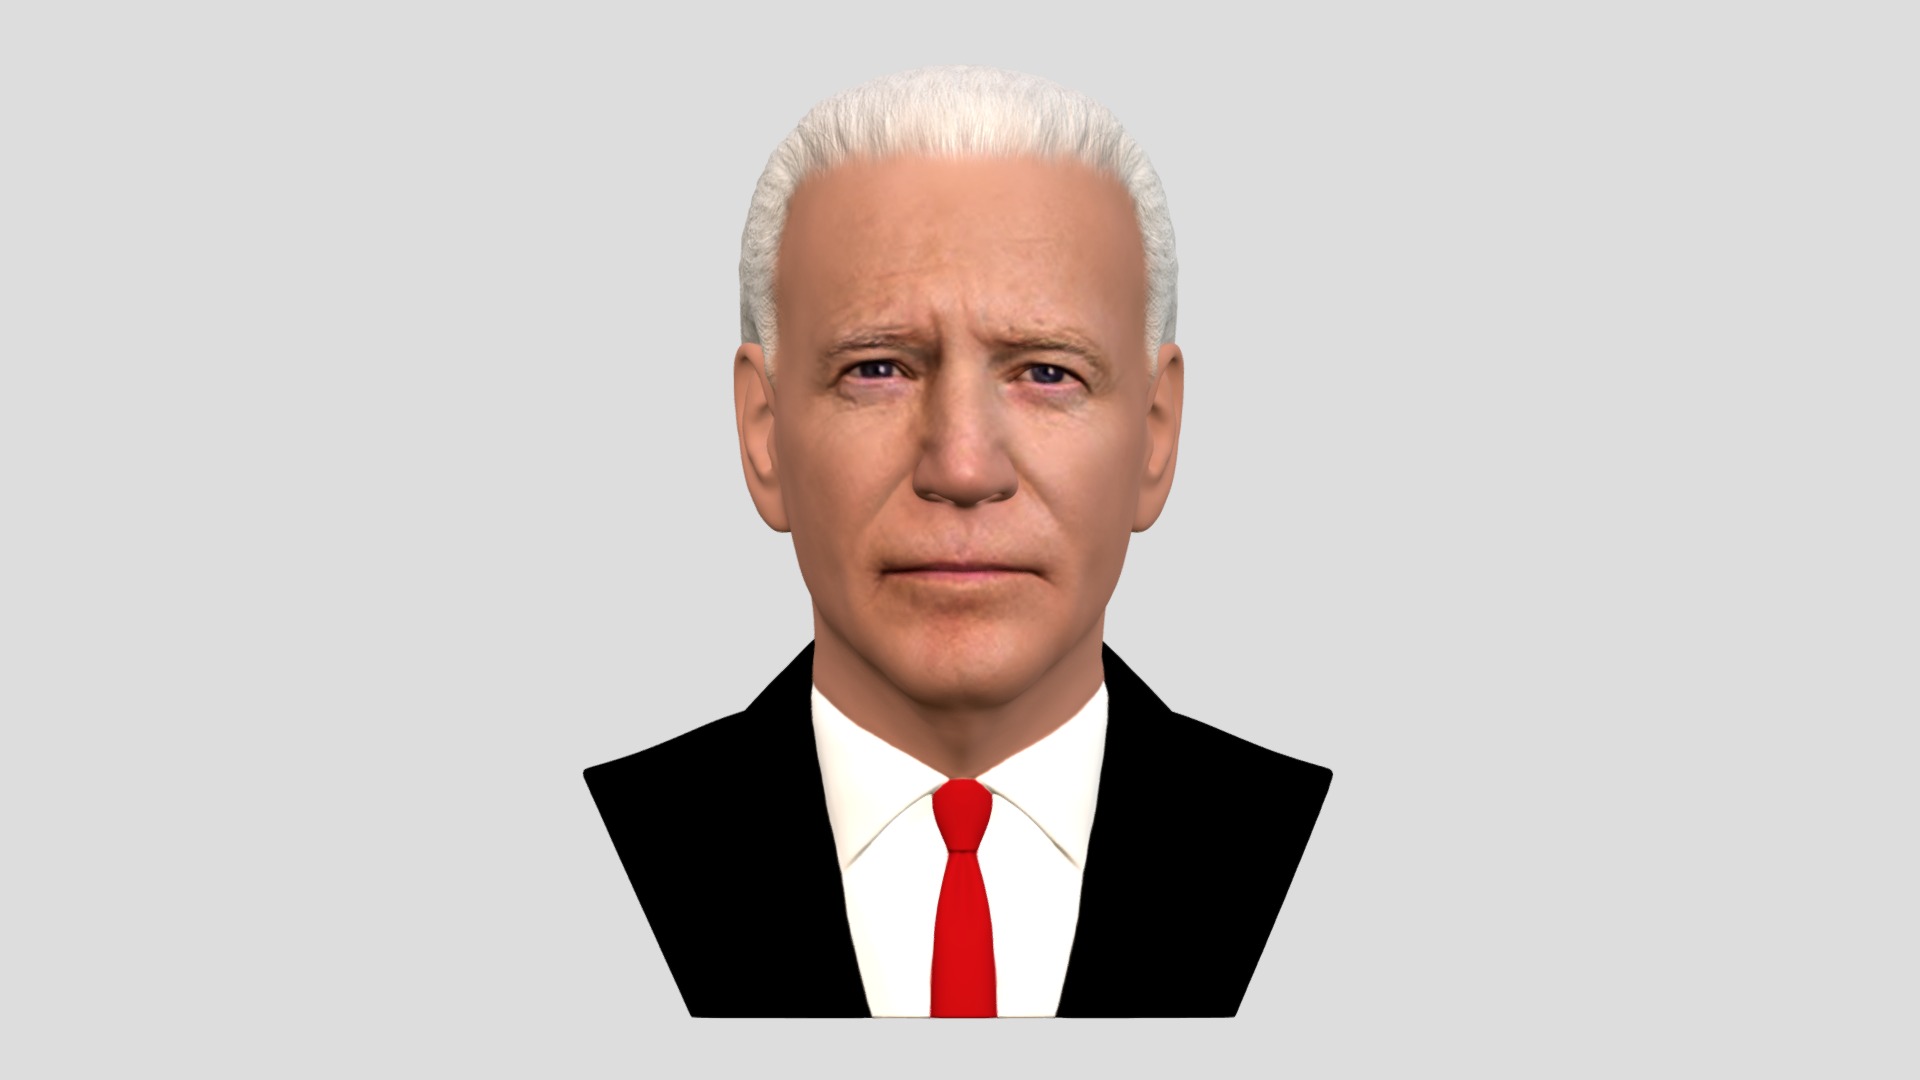 3D model Joe Biden bust for full color 3D printing - This is a 3D model of the Joe Biden bust for full color 3D printing. The 3D model is about a man in a suit.